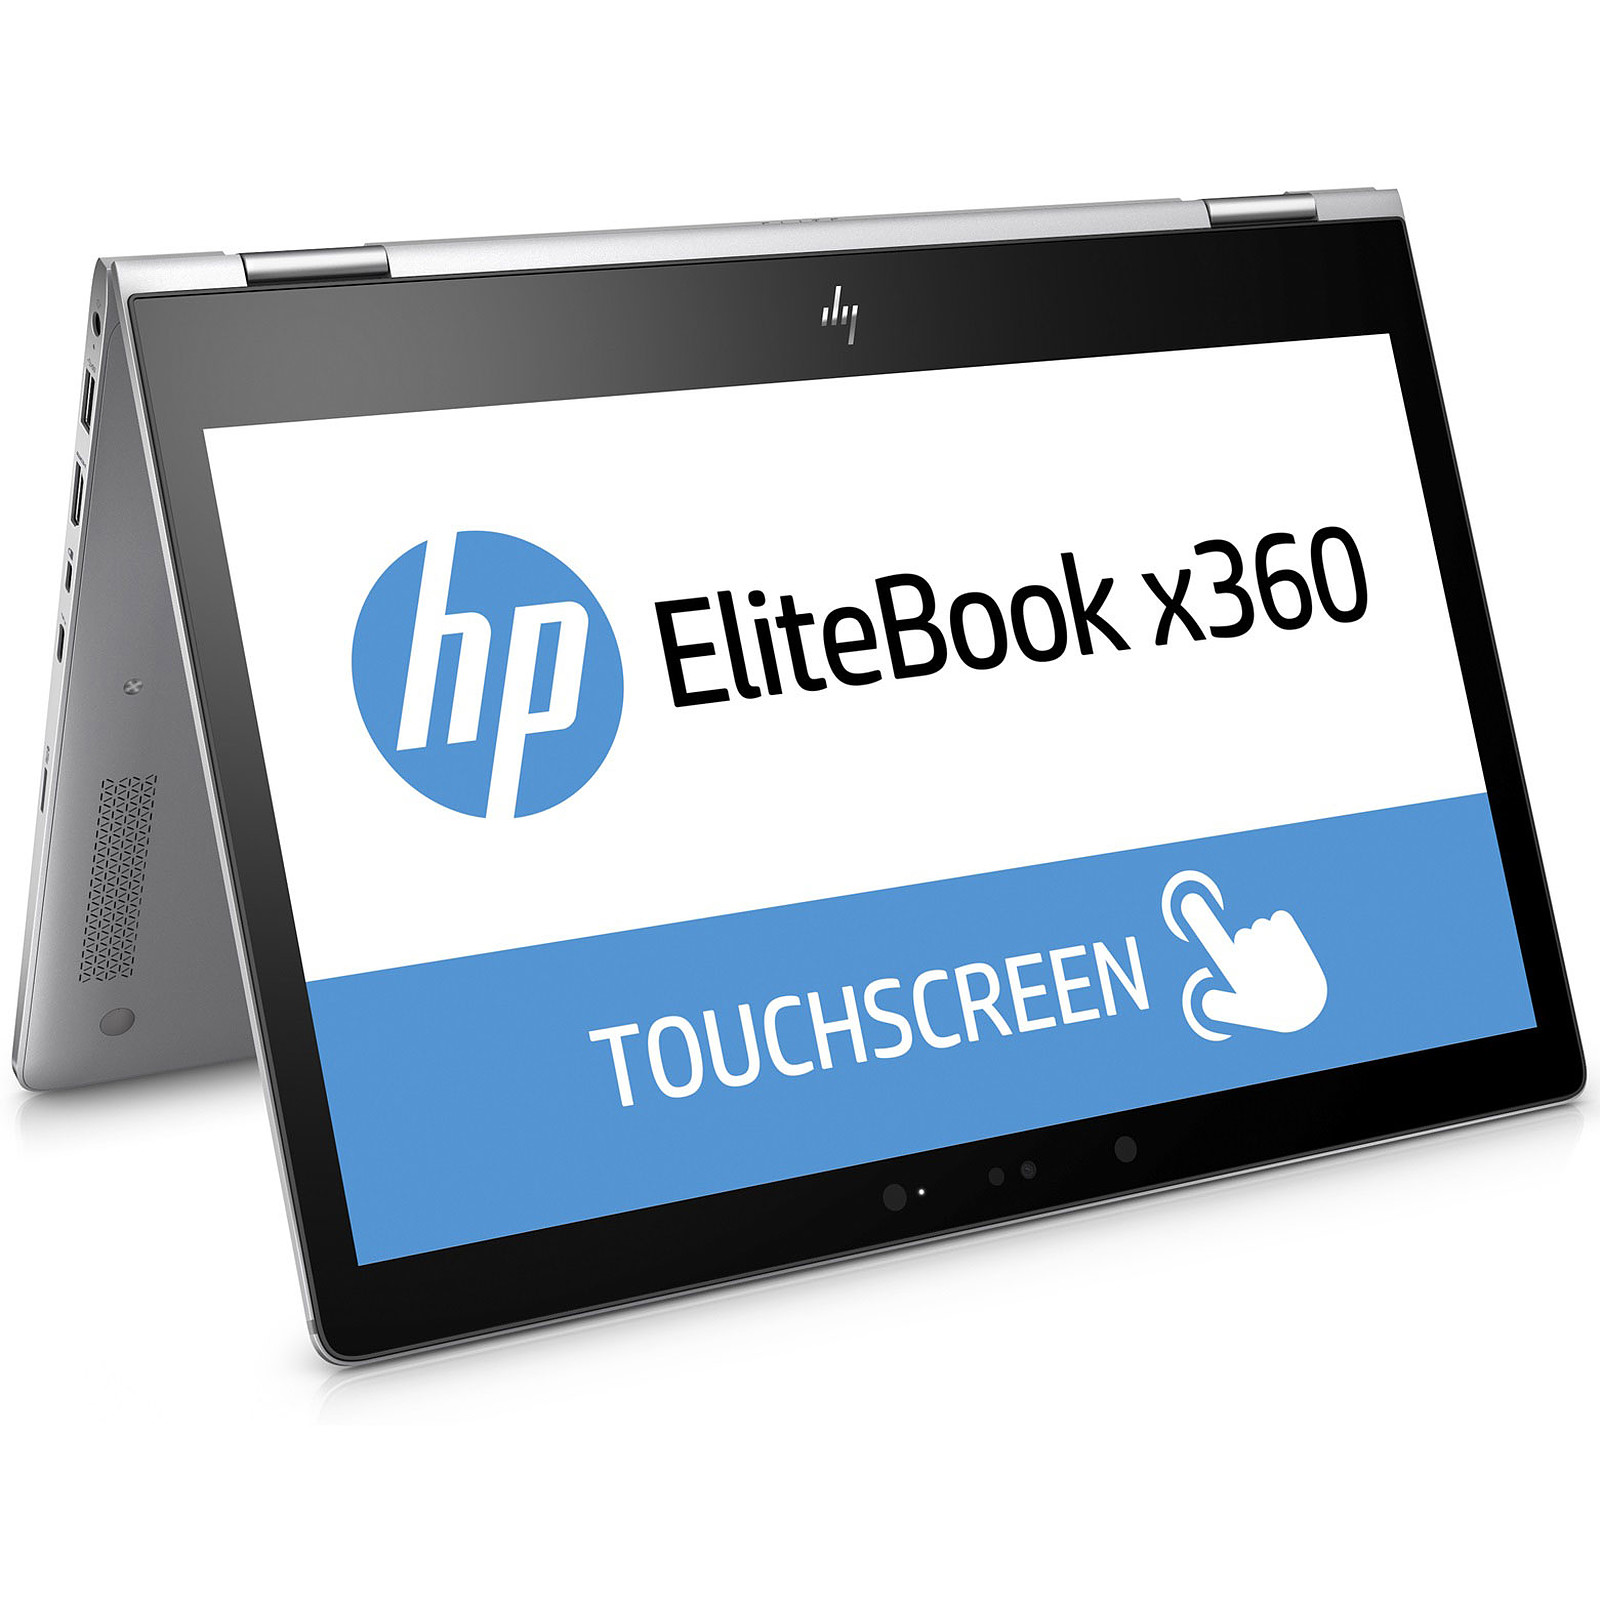 HP elitebook x360 1030  Poids très très léger (1,3 kg environ)*

HP Elitebook 1030 X360 G2*
Ordinateur portable professionnel très stable de 7e génération avec écran tactile Full HD rotatif à 360°

Spécifications complètes
✅ Processeur Core i5-7600U 2,9 GHz 7e génération (turbo boost jusqu